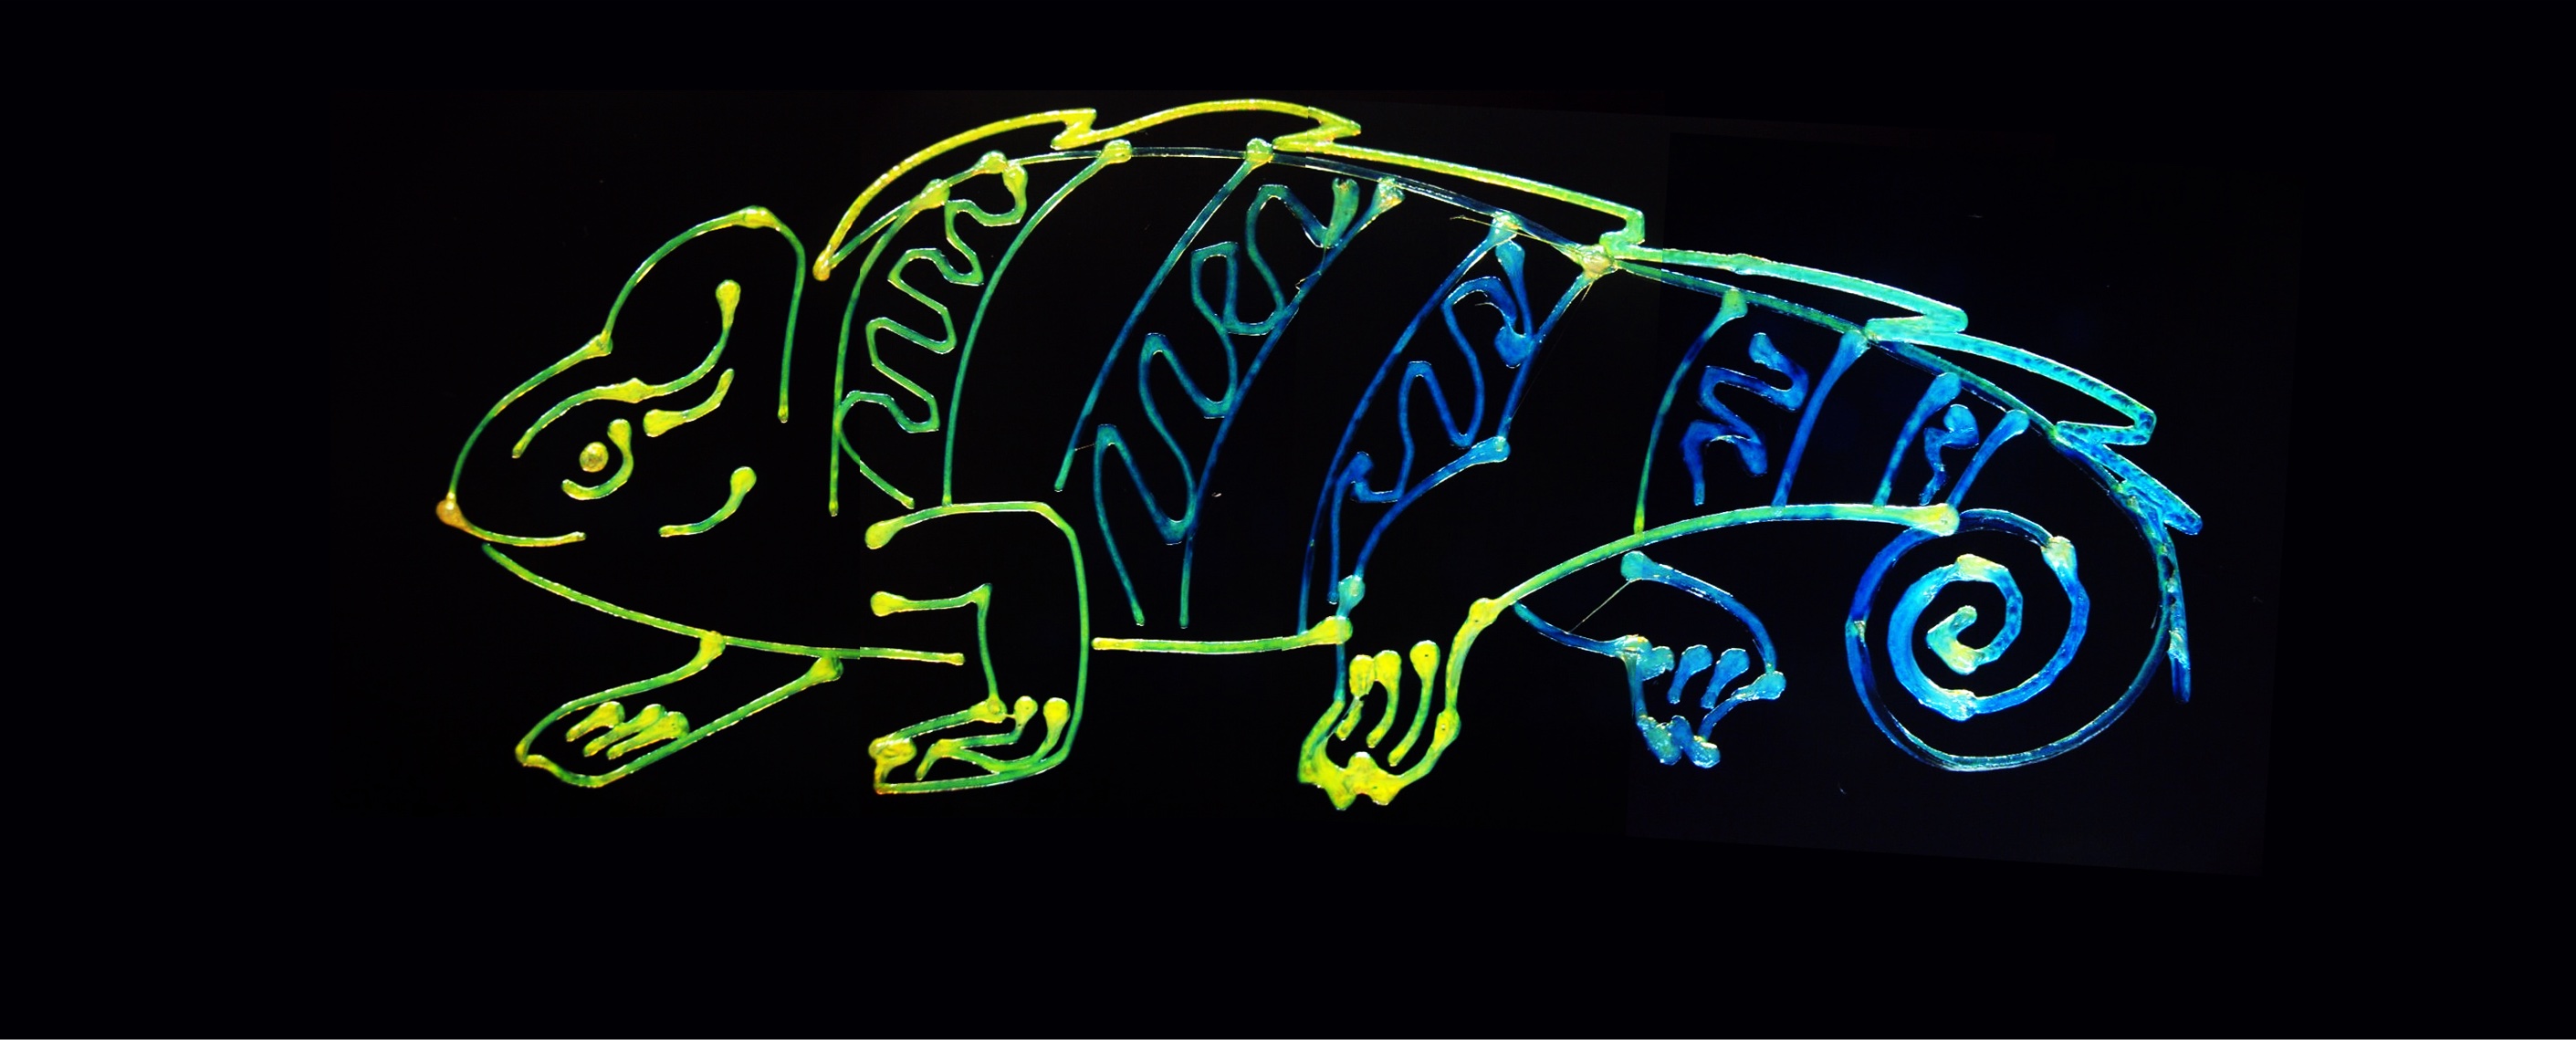 3D printed chameleon